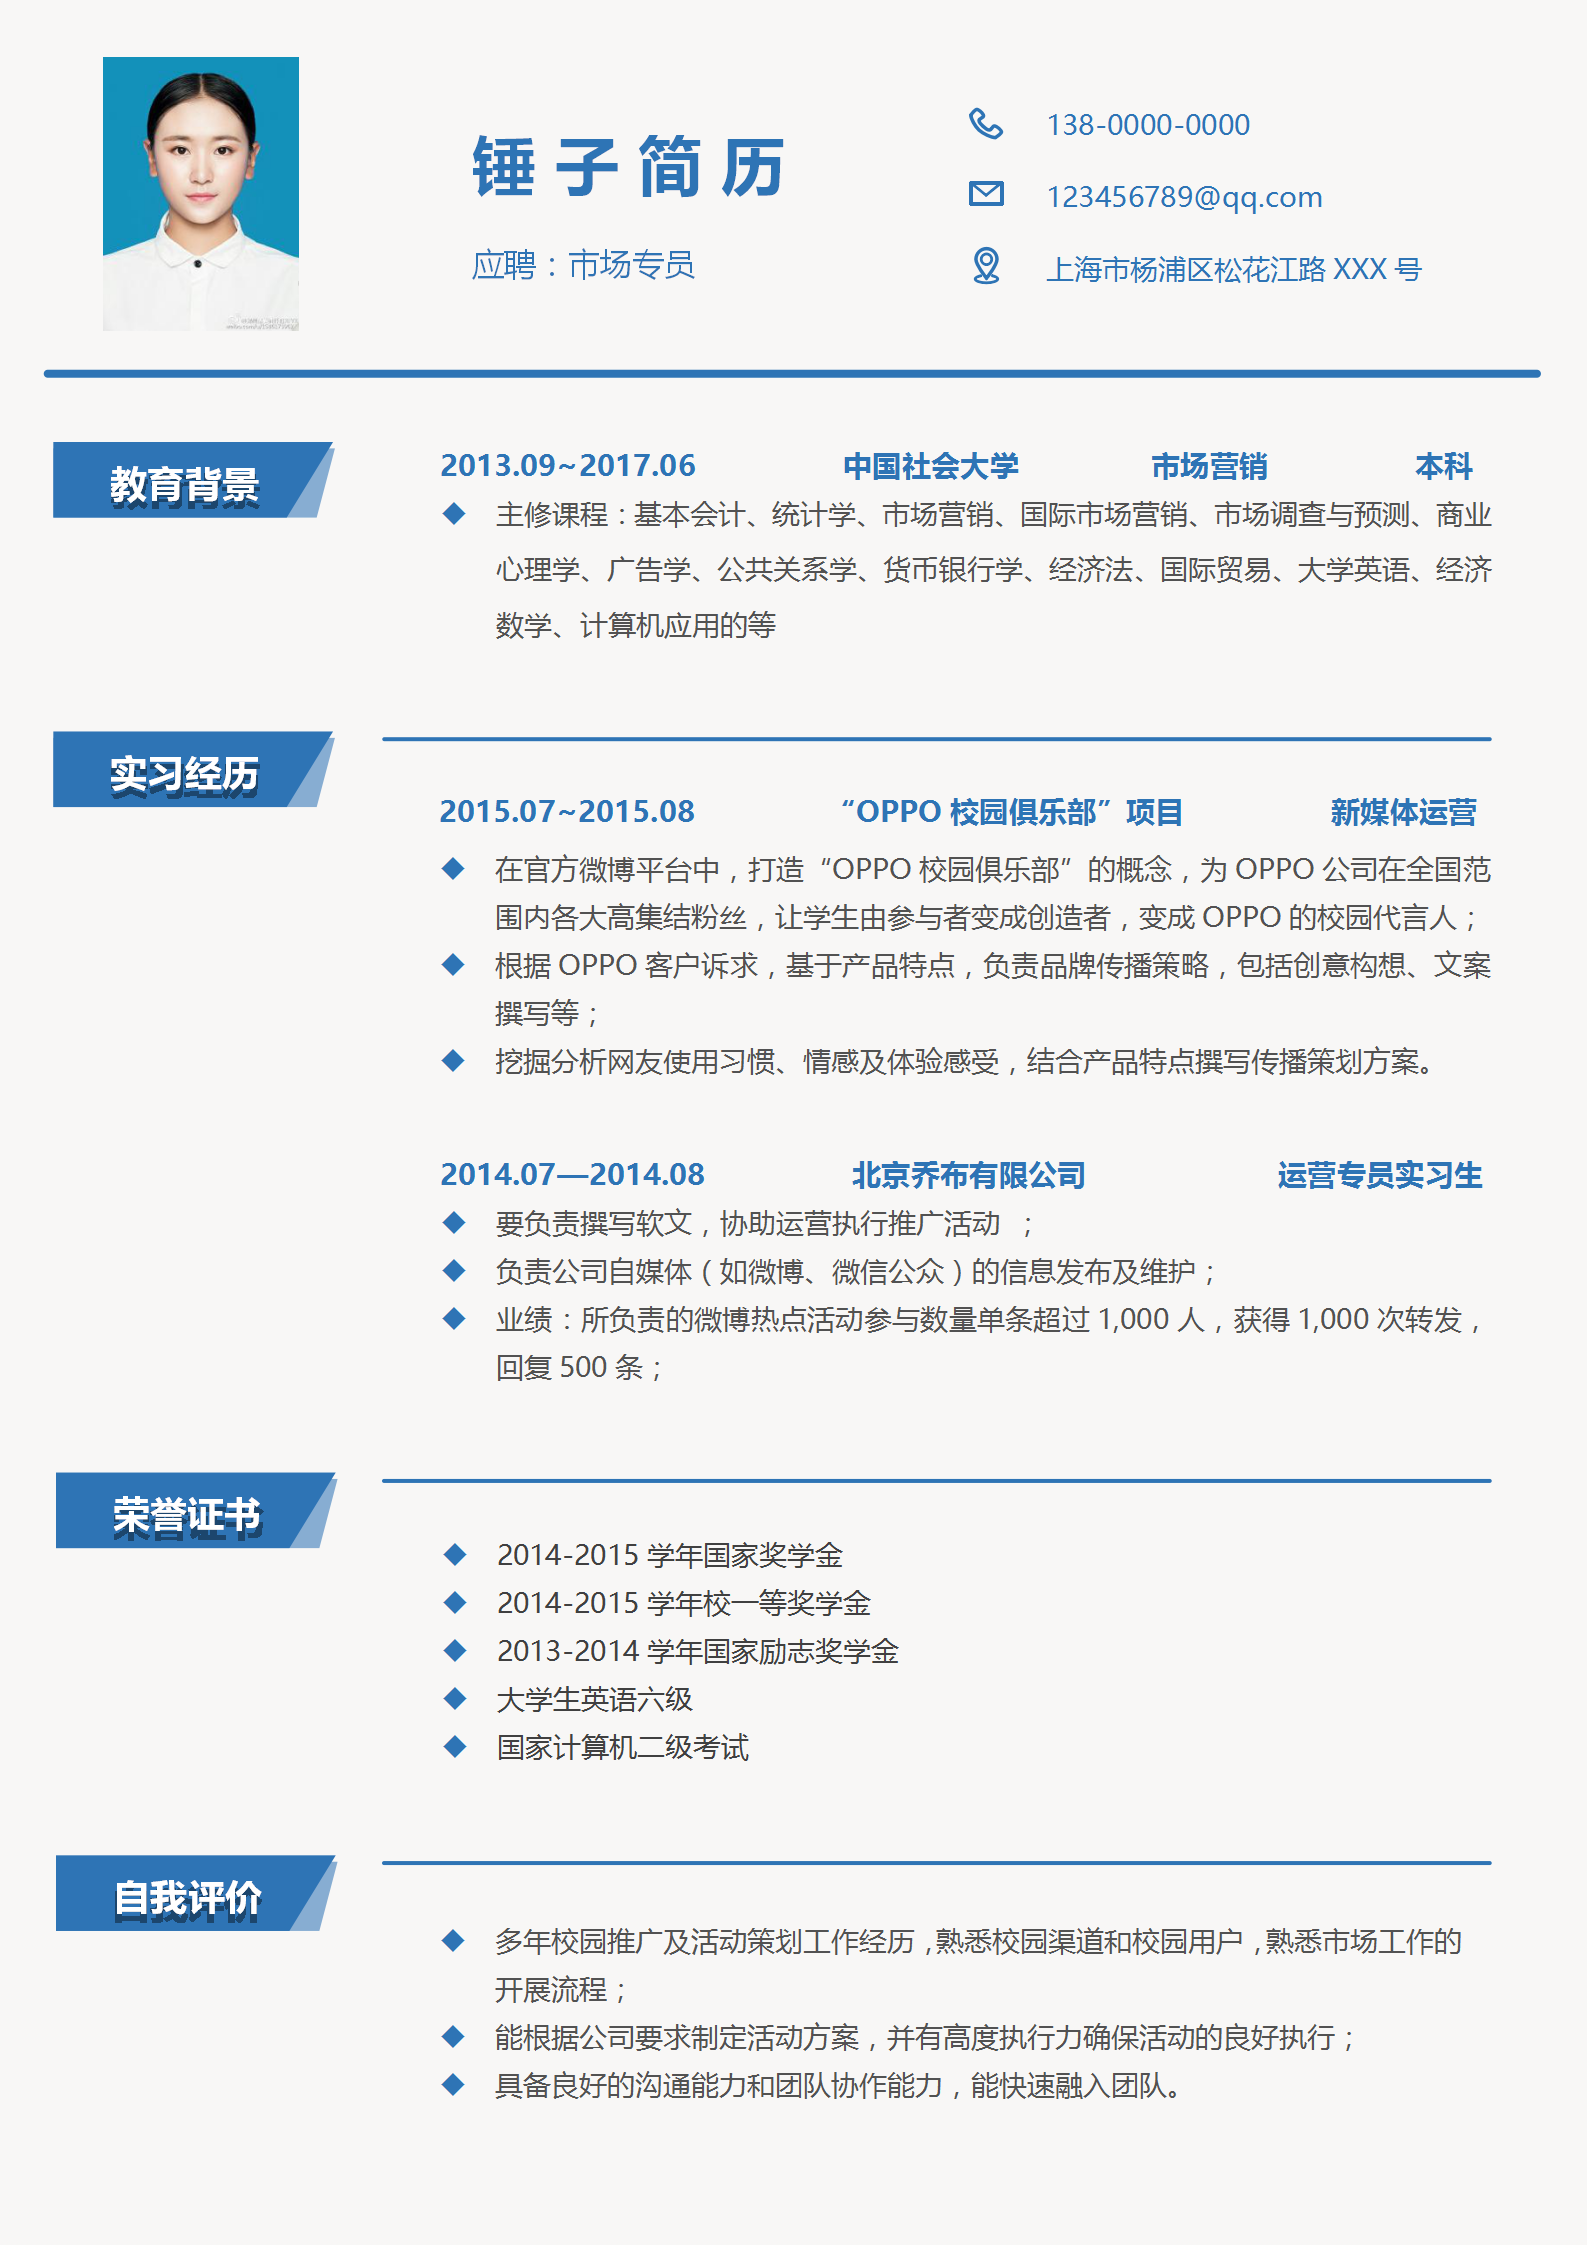 中文简历模板大全_专业中文简历模板免费下载 - 锤子简历